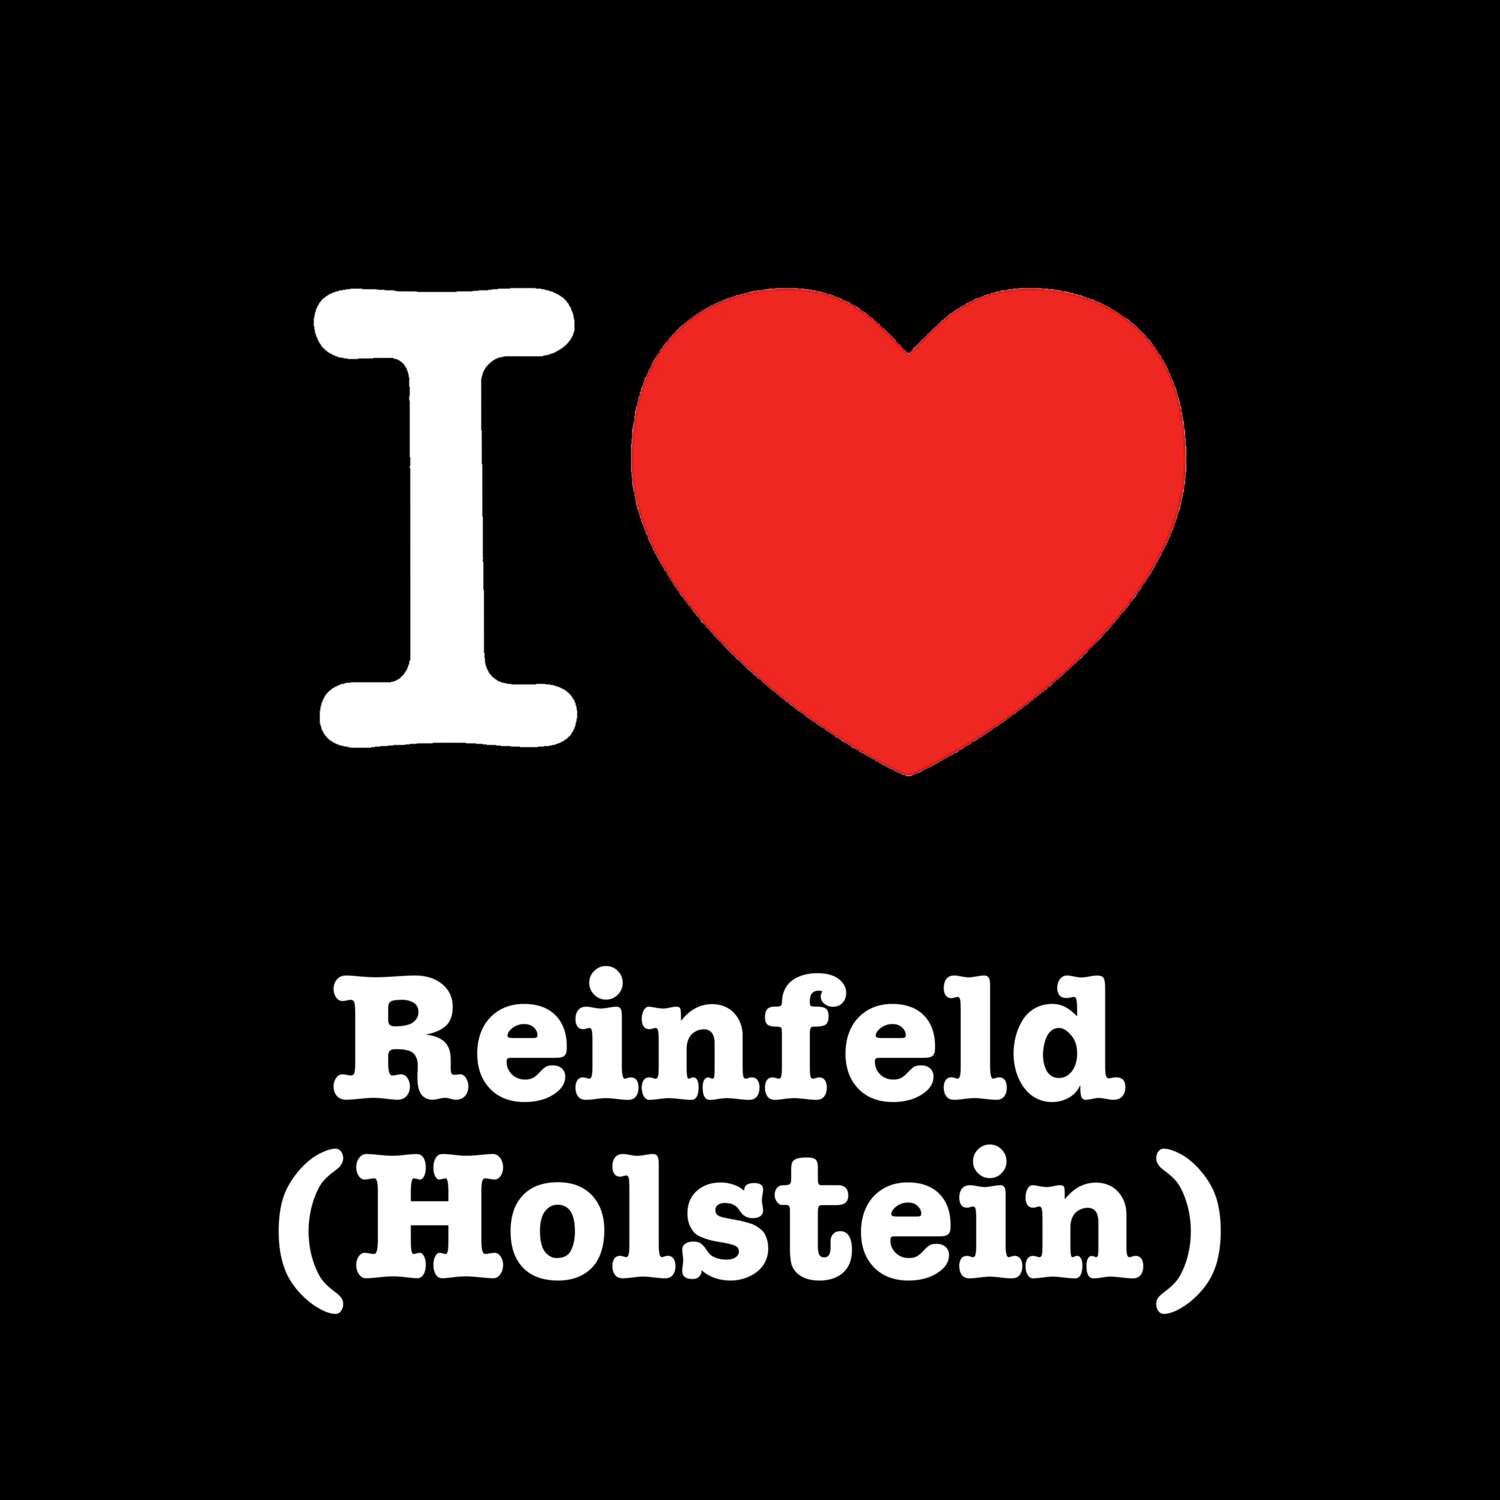 Reinfeld (Holstein) T-Shirt »I love«